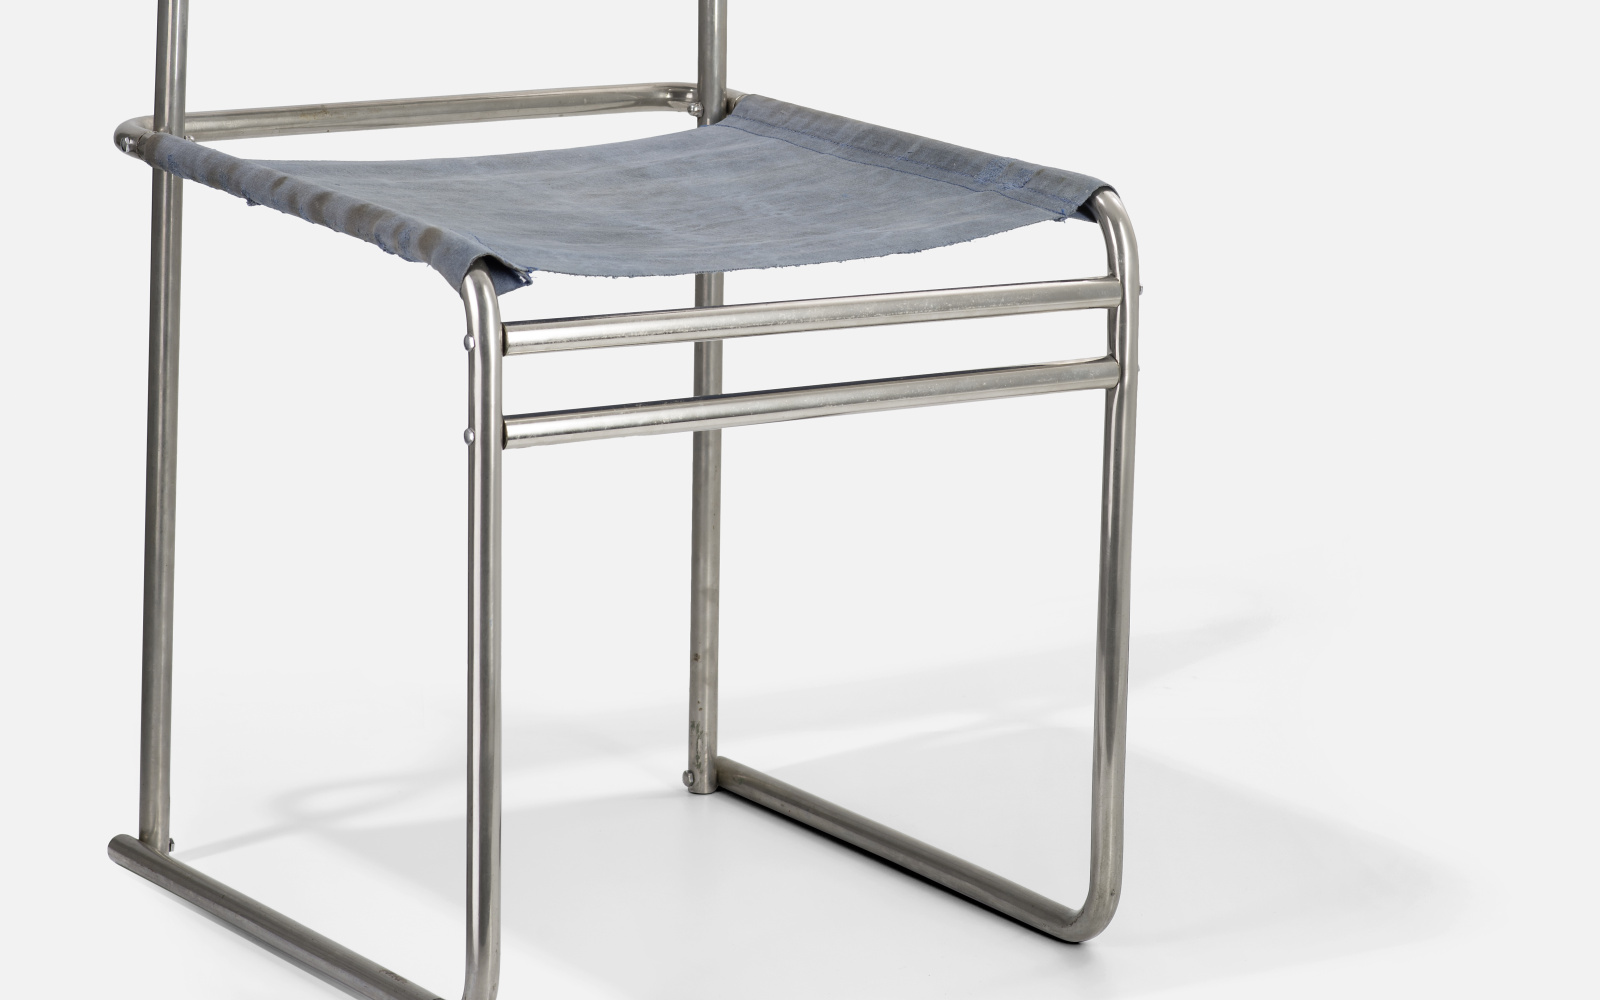 Ein Stuhl, dessen Gerüst aus Metallstangen besteht. Die Sitz- und Rückenfläche ist aus Stoff